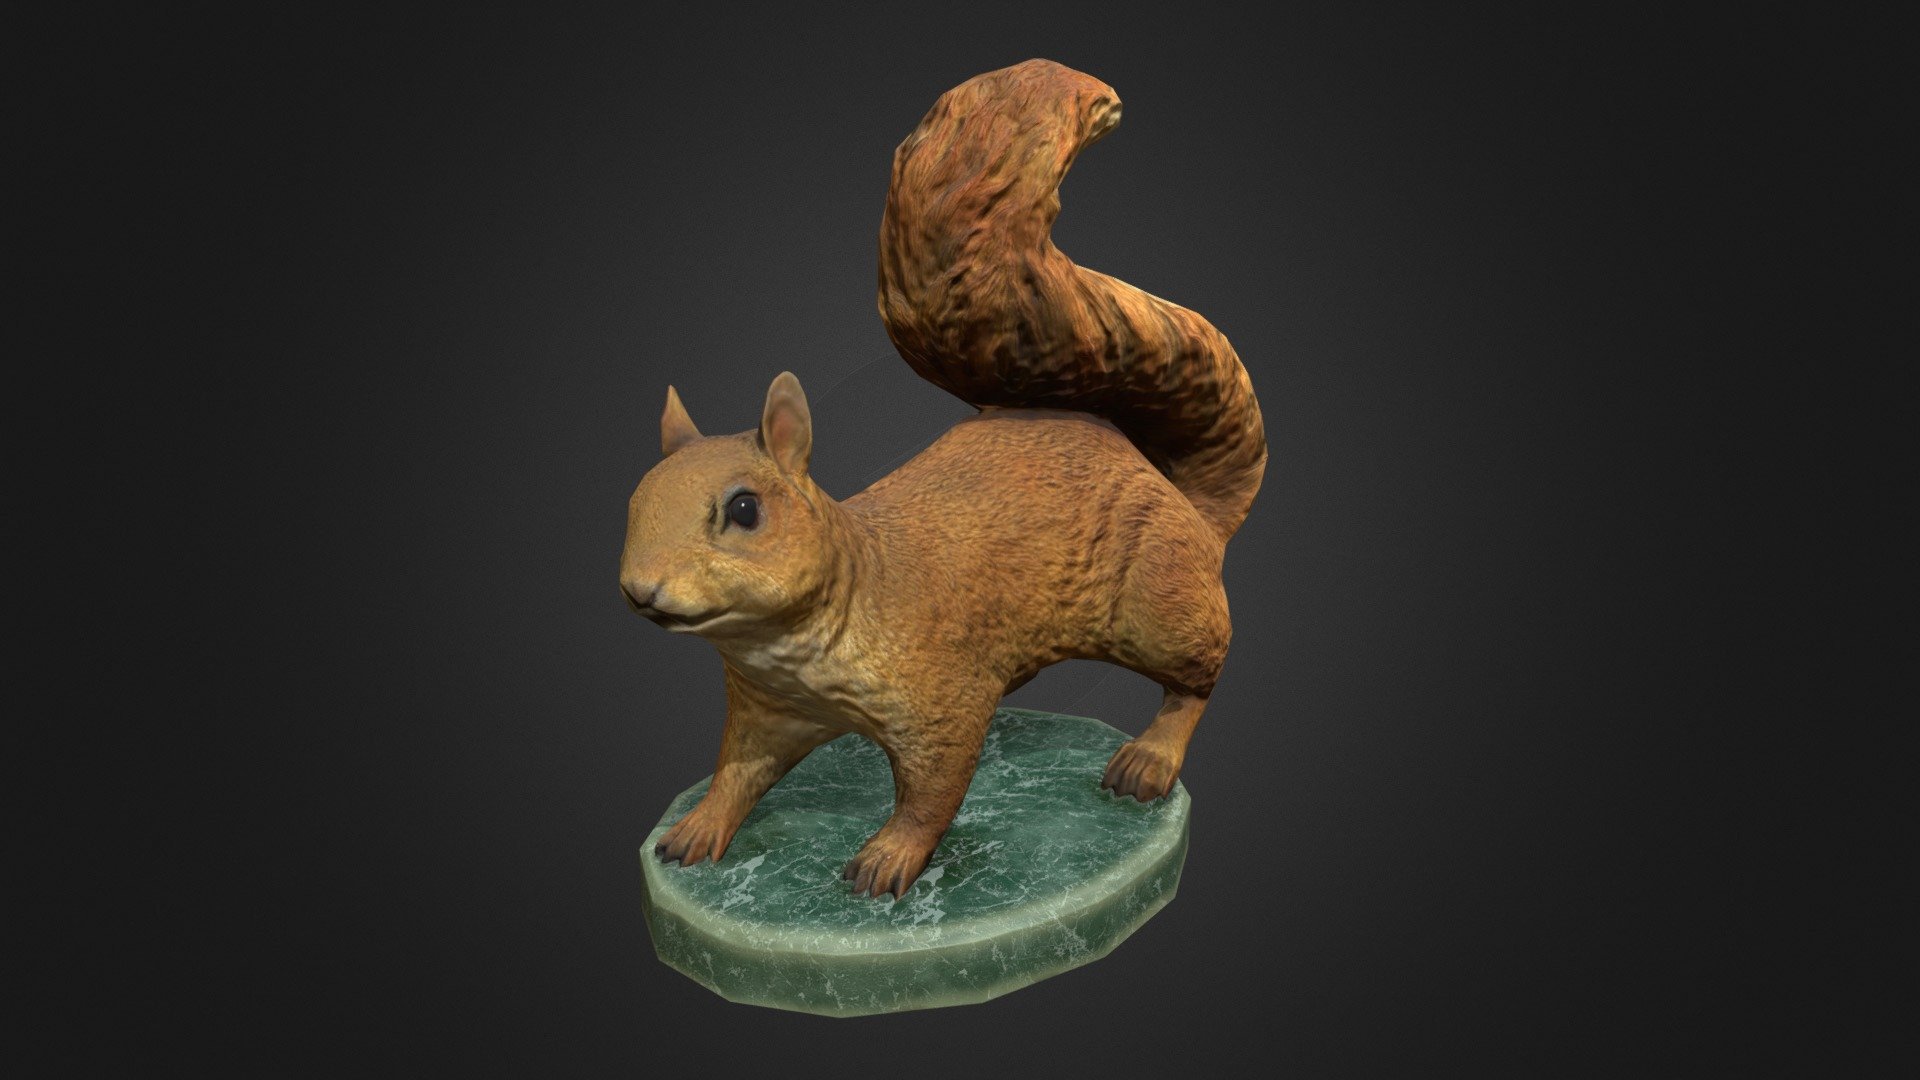 Squirrel statuette - Squirrel statuette - 3D model by STmodels (@gravchik) 3d model